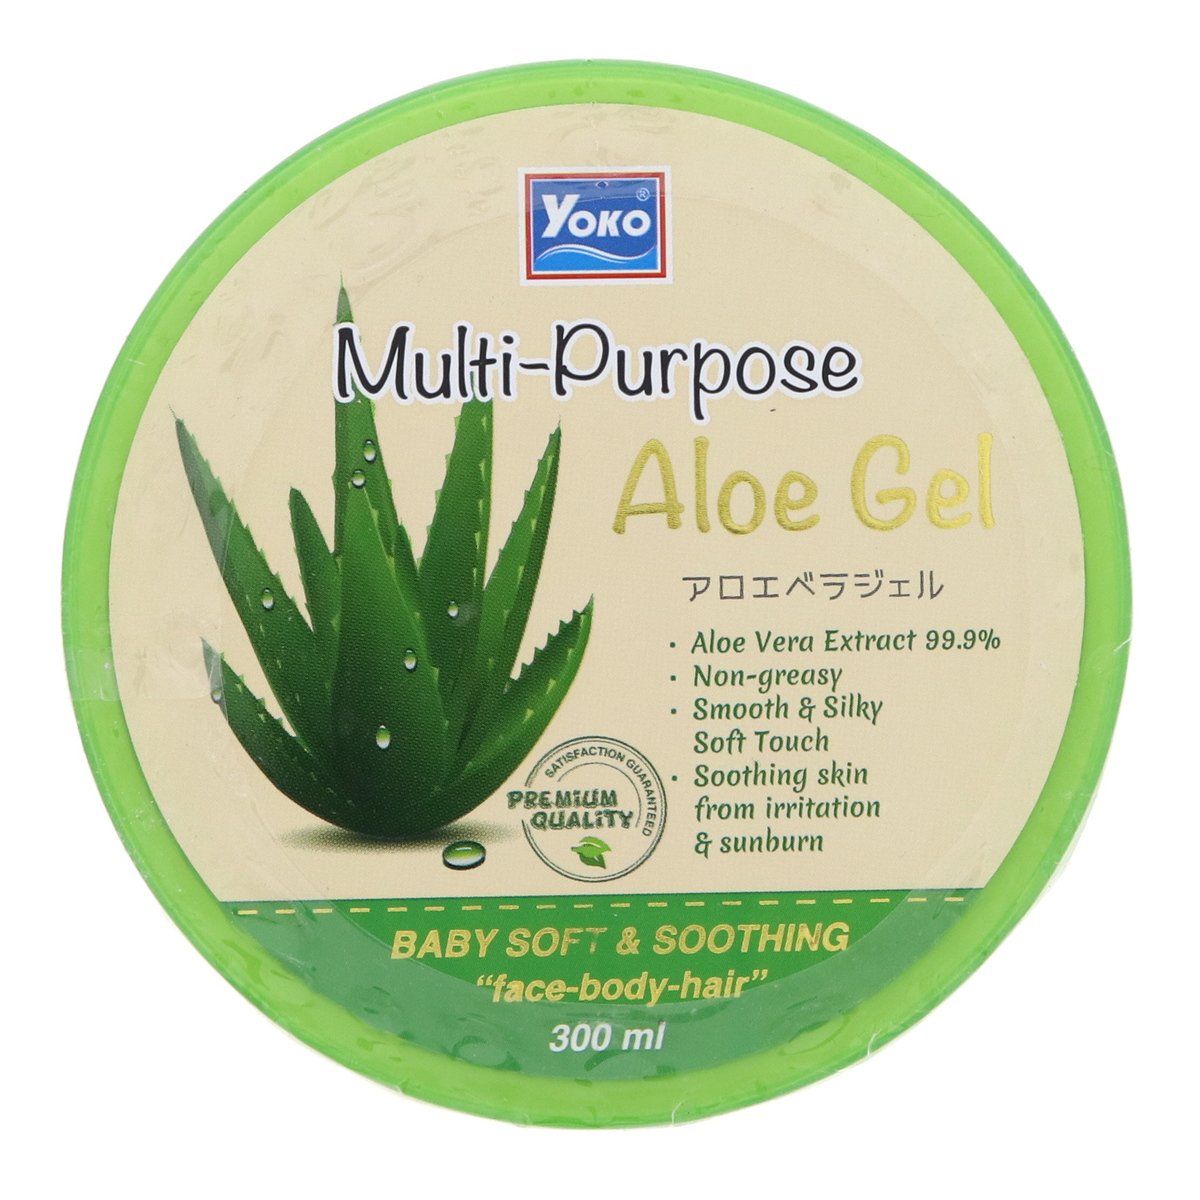 Buy Yoko Multi Purpose Aloe Gel 300 ml Online at Best Price | Other Skin Care | Lulu UAE in UAE